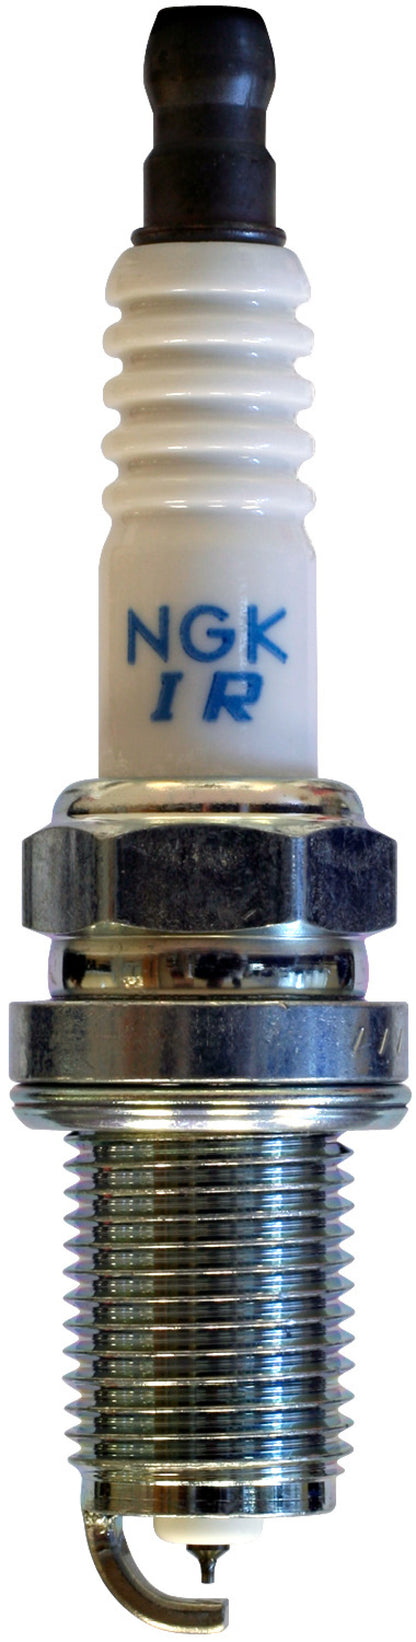 NGK Iridium/Platinum Spark Plug Box of 4 (IFR7X7G)